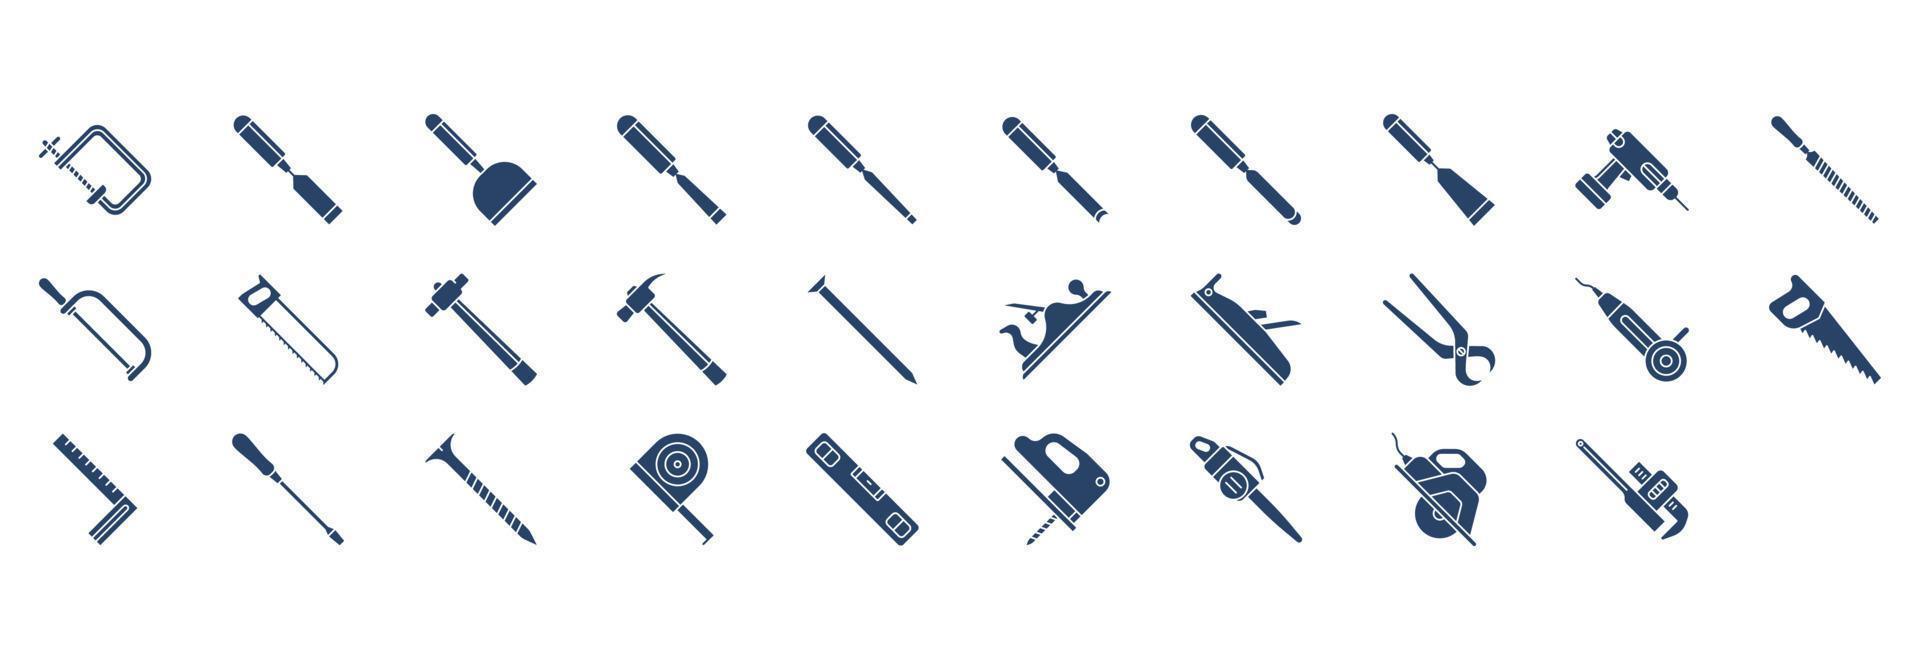 verzameling van pictogrammen verwant naar timmerwerk hulpmiddelen, inclusief pictogrammen Leuk vinden klipper, snijdend hulpmiddel, het dossier en meer. vector illustraties, pixel perfect reeks